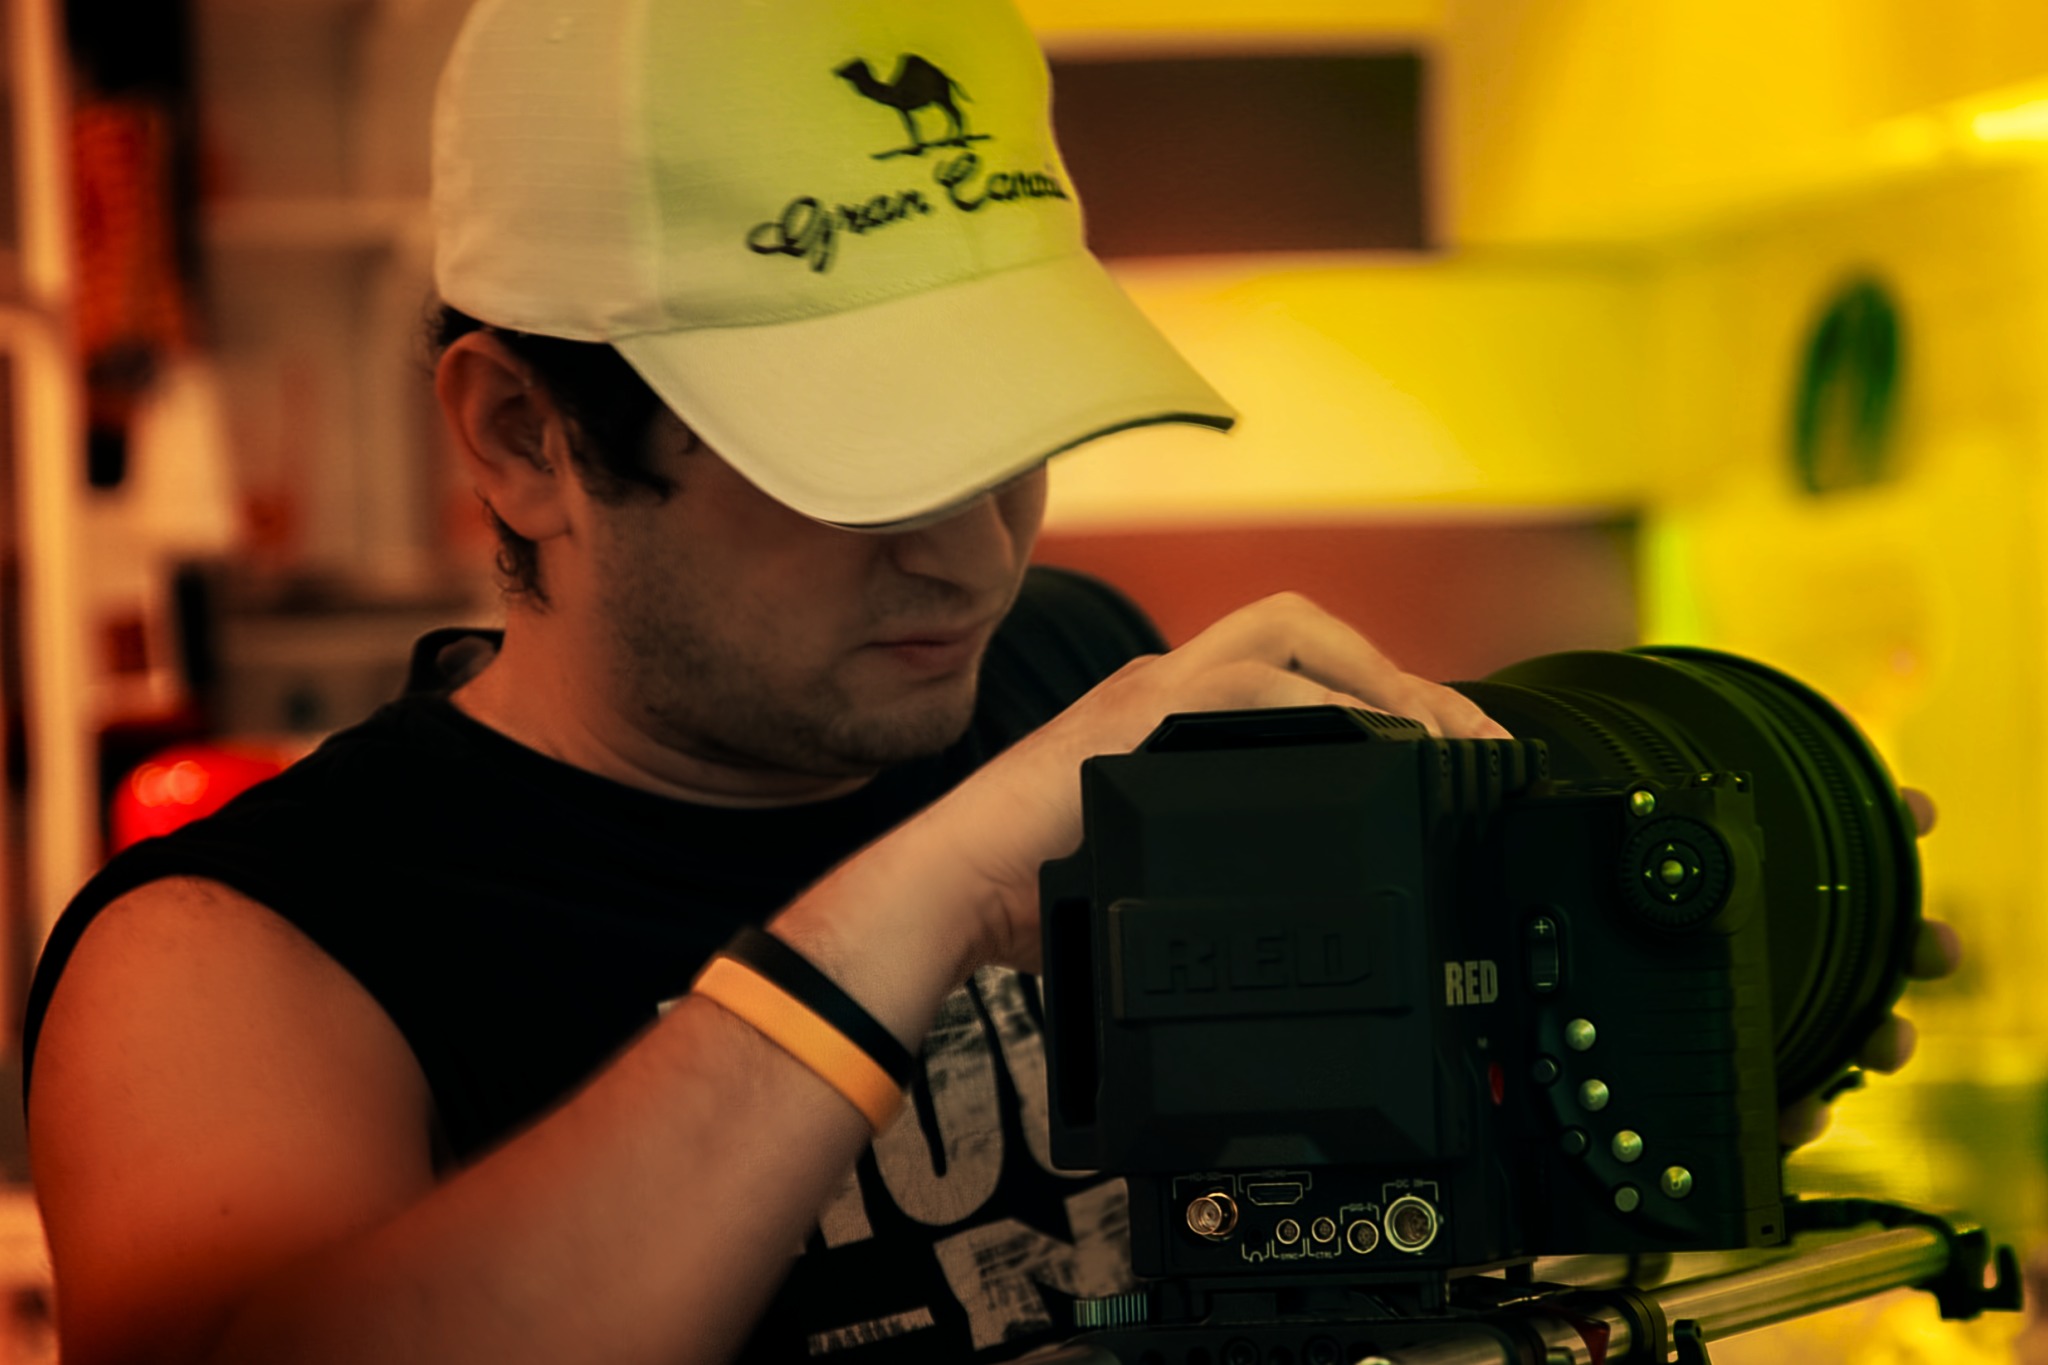 Director of Photography Luigi Benvisto